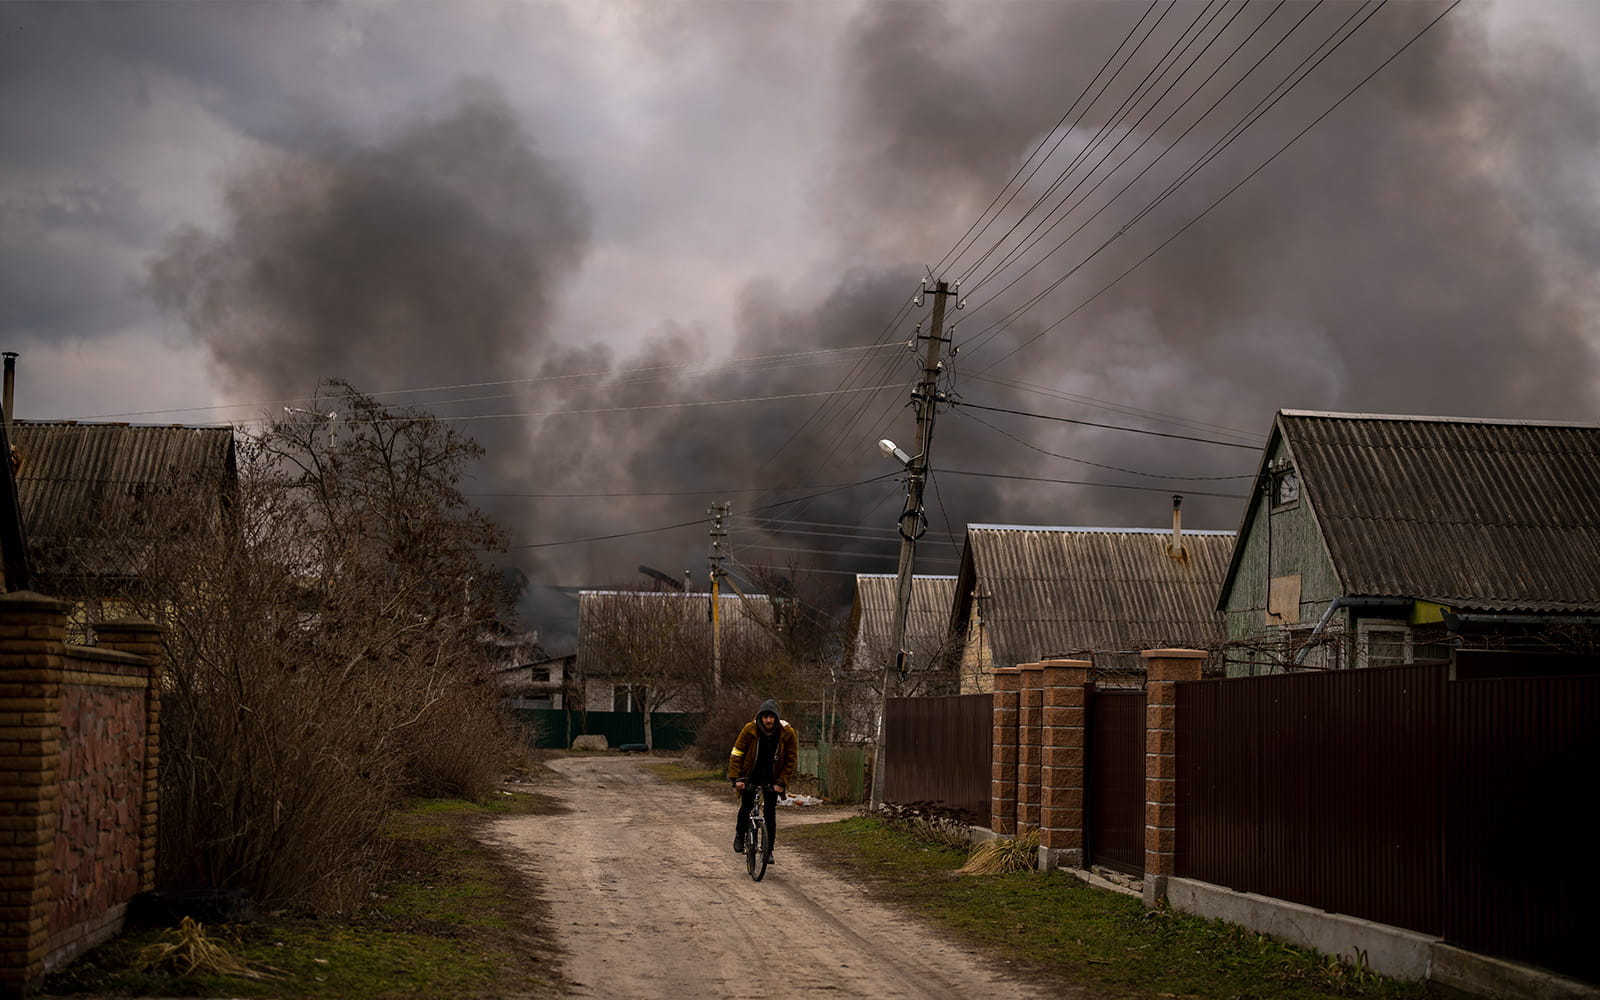 Un hombre ucraniano conduce su bicicleta cerca de una fábrica y una tienda que arden tras ser bombardeadas en Irpin, en las afueras de Kiev, Ucrania, el 6 de marzo de 2022. (AP Photo/Emilio Morenatti)